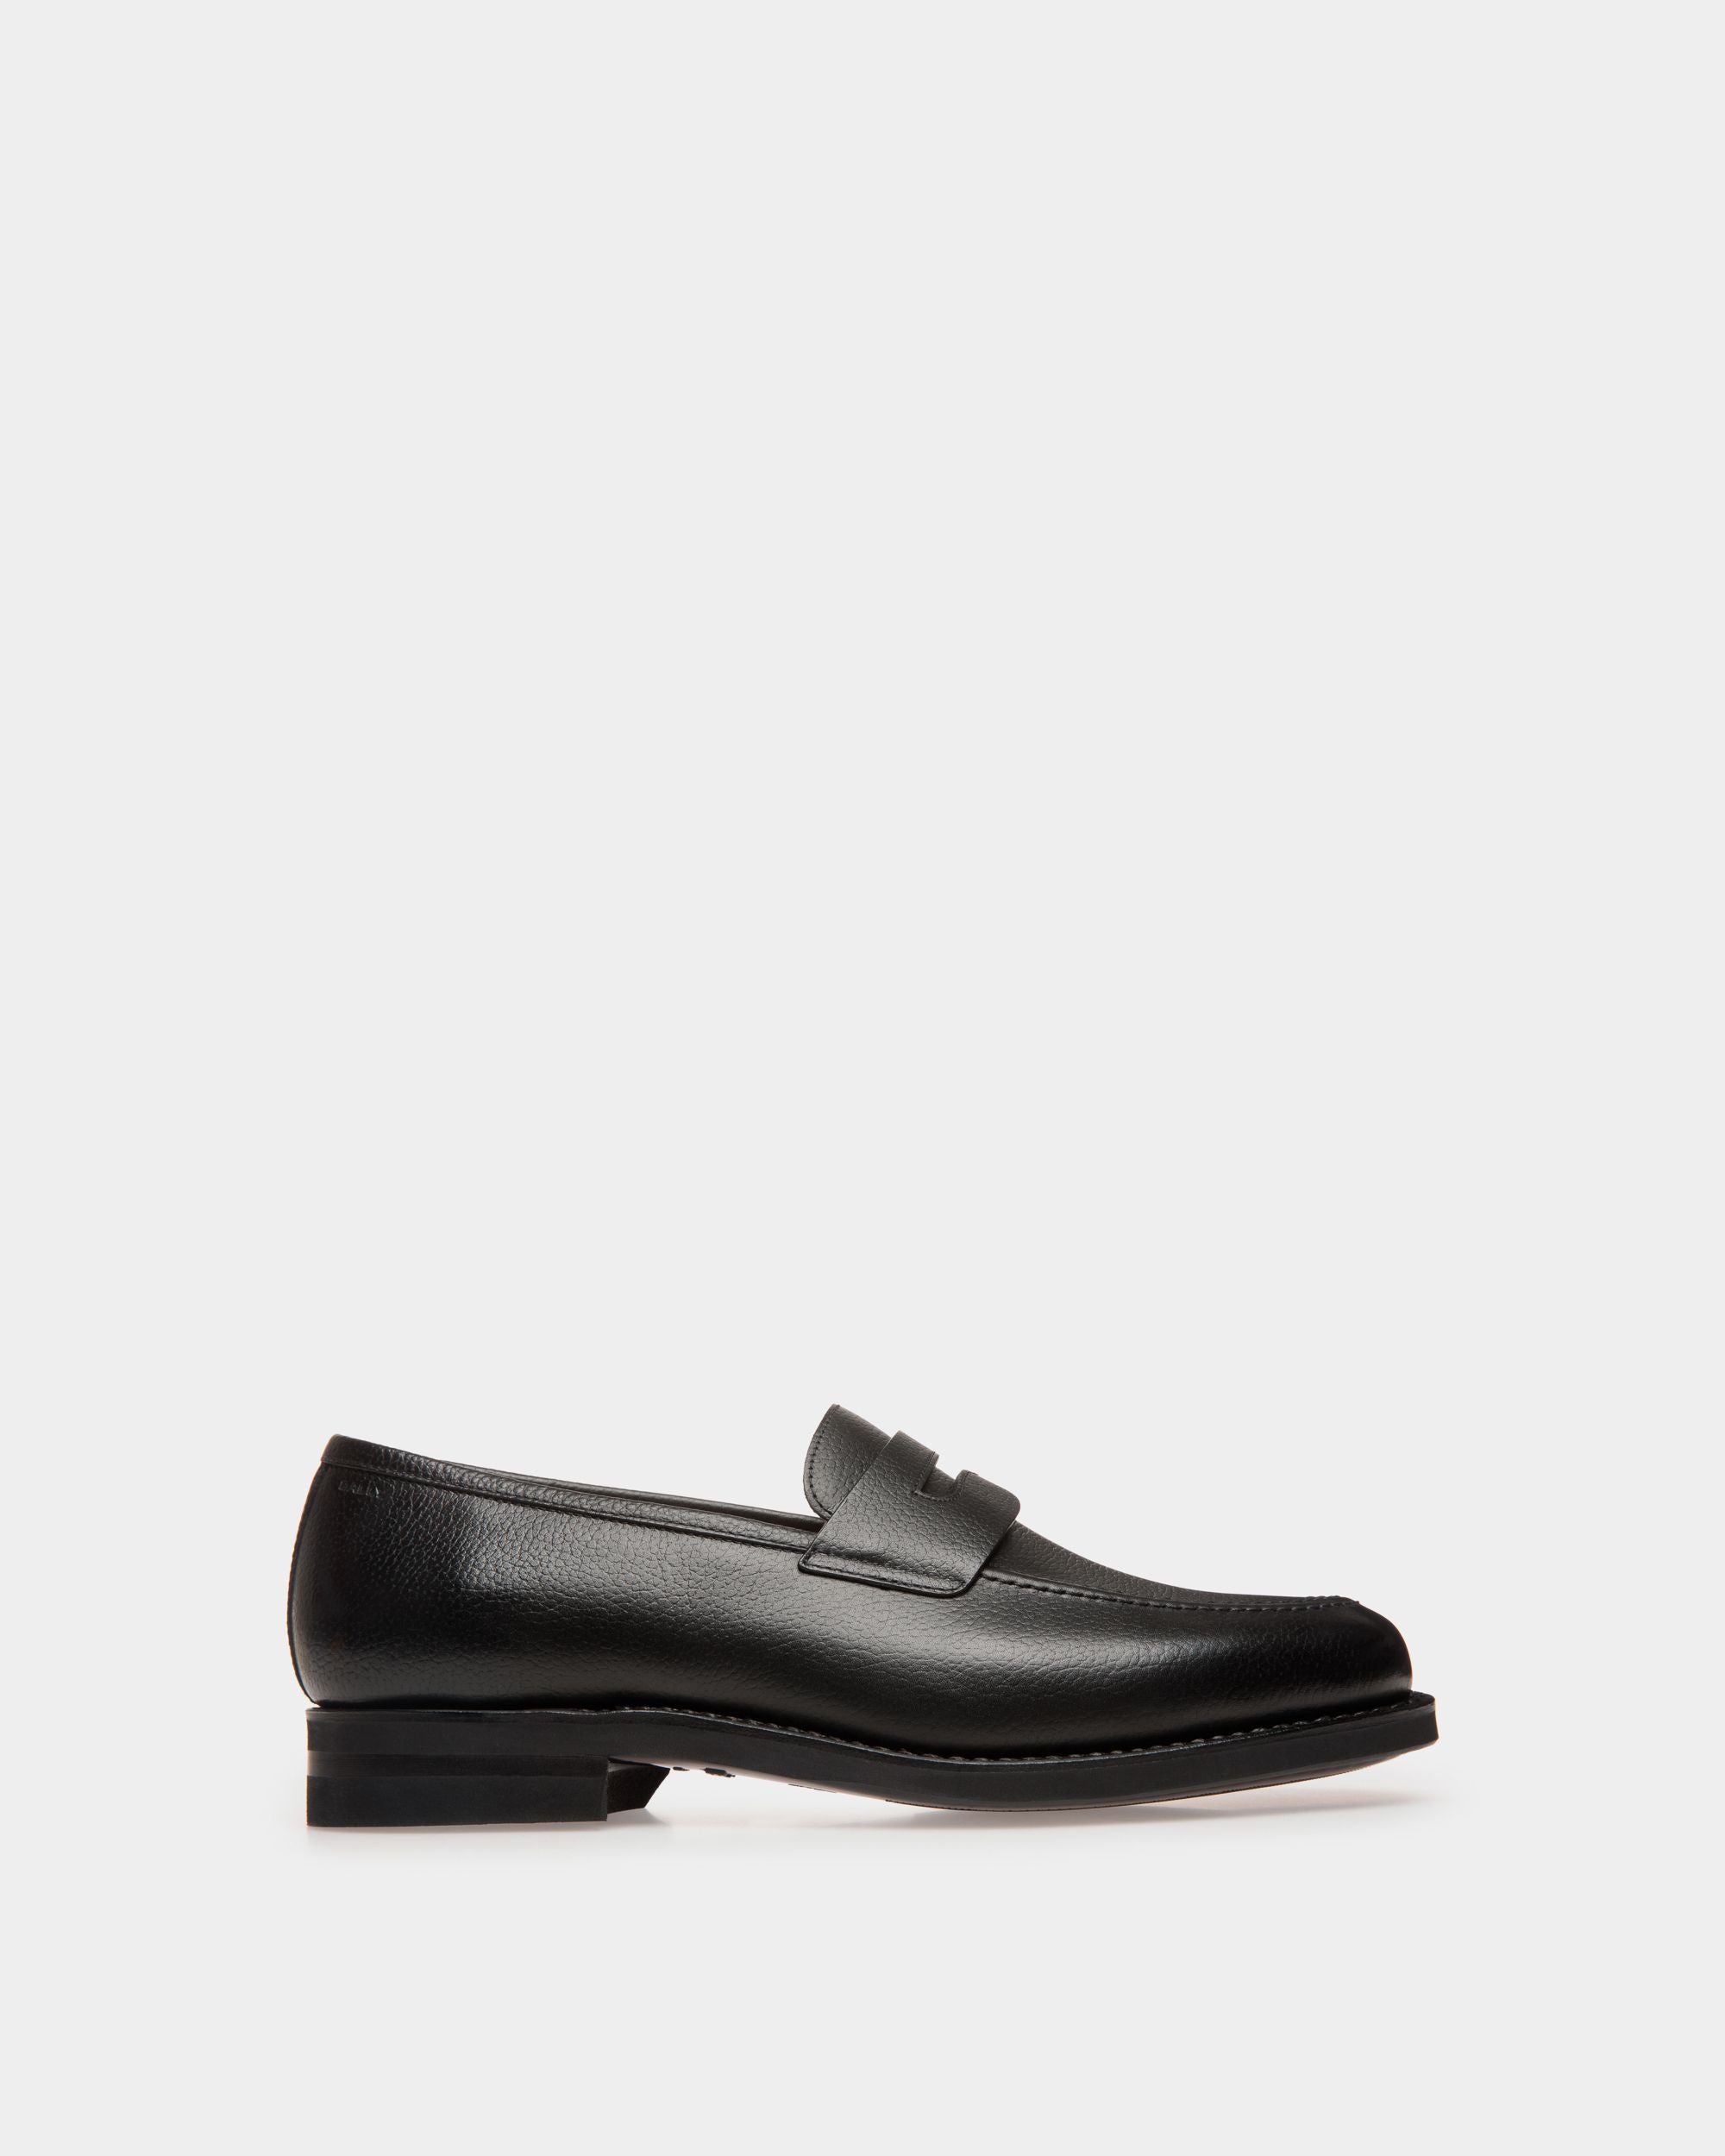 Schoenen | Loafer für Herren aus geprägtem Leder in Schwarz | Bally | Still Life Seite